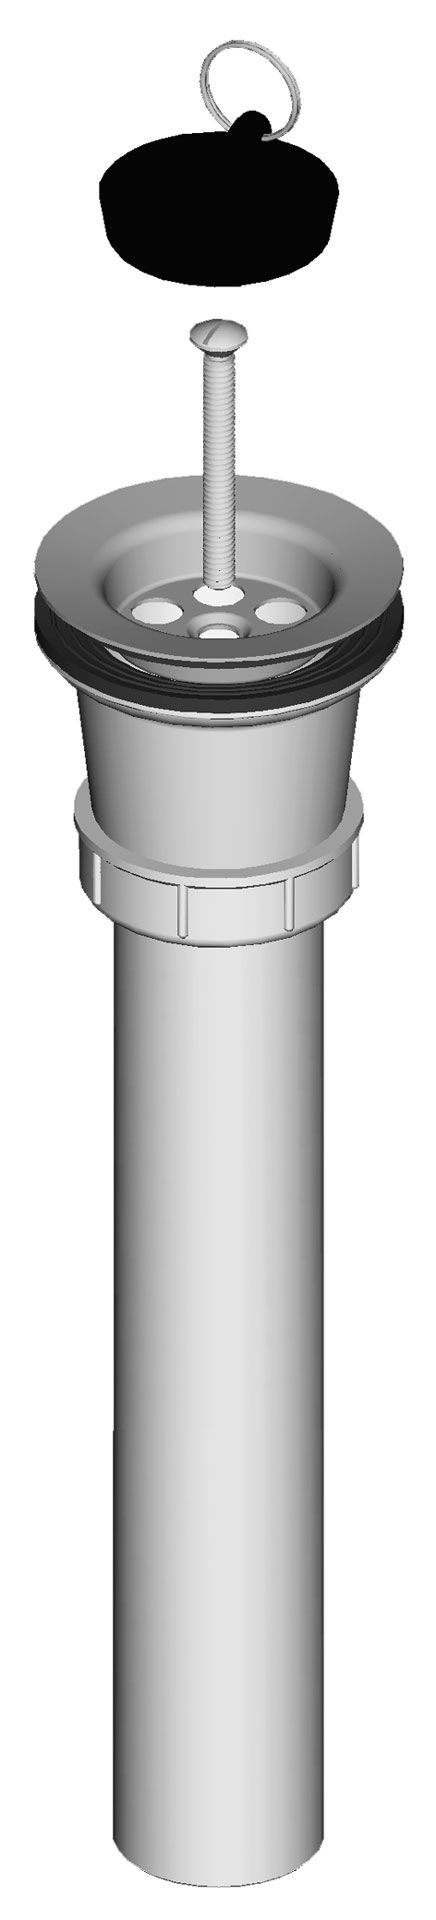 Izlivni ventil za tuš kad, rešetka Ø 70 mm, navpična odtočna cev